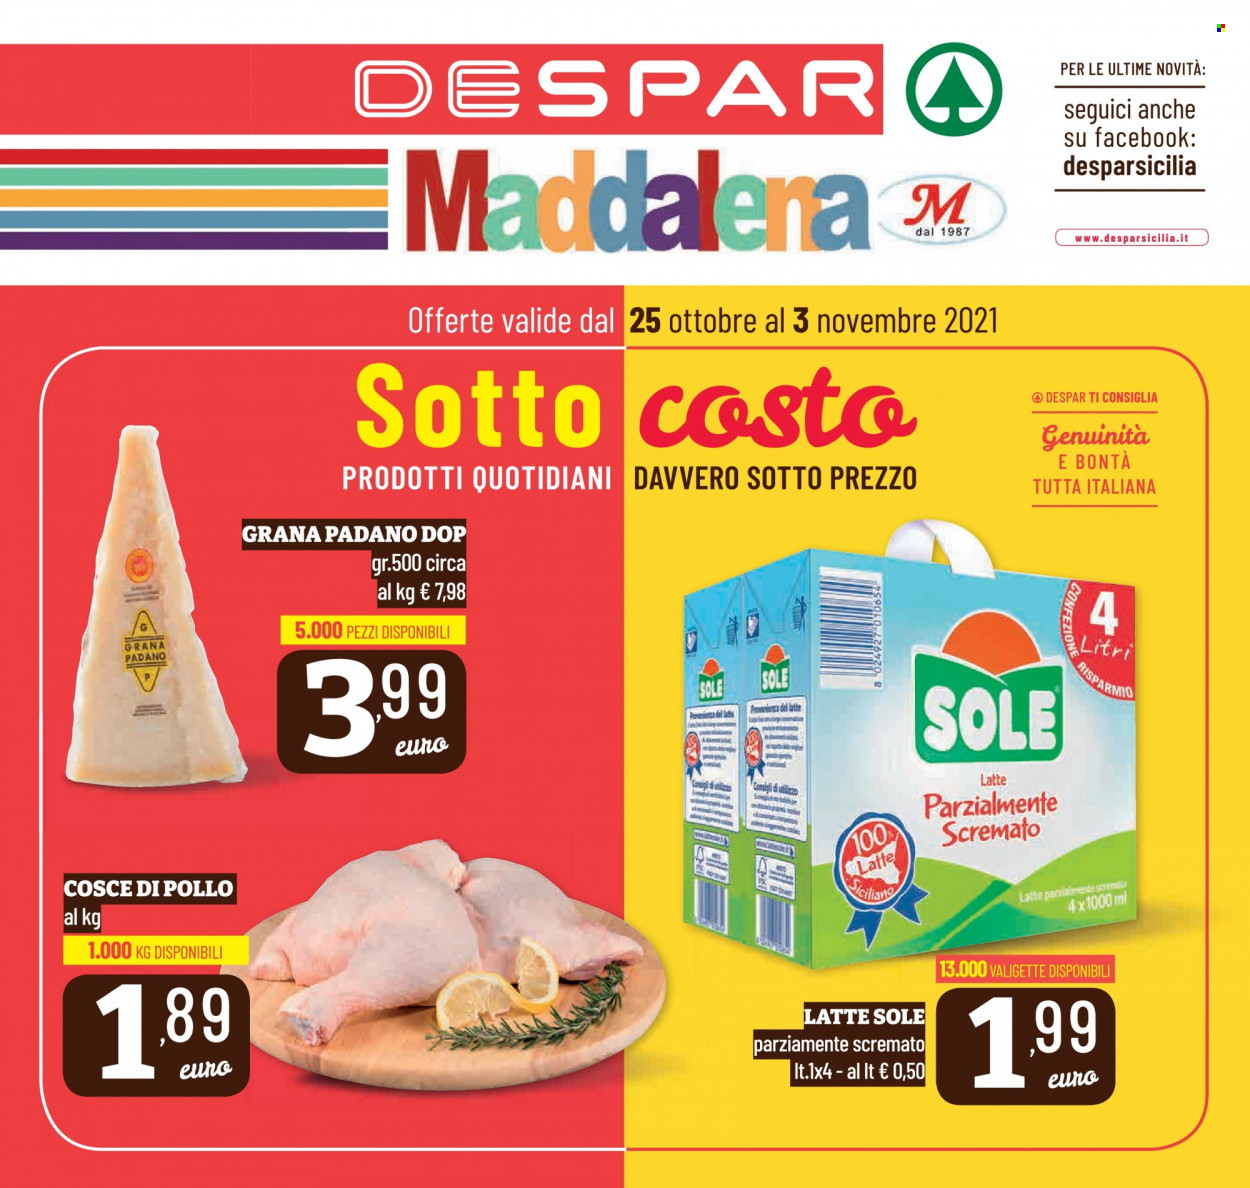 thumbnail - Volantino Despar - 25/10/2021 - 3/11/2021 - Prodotti in offerta - cosce di pollo, formaggio, Grana Padano. Pagina 1.